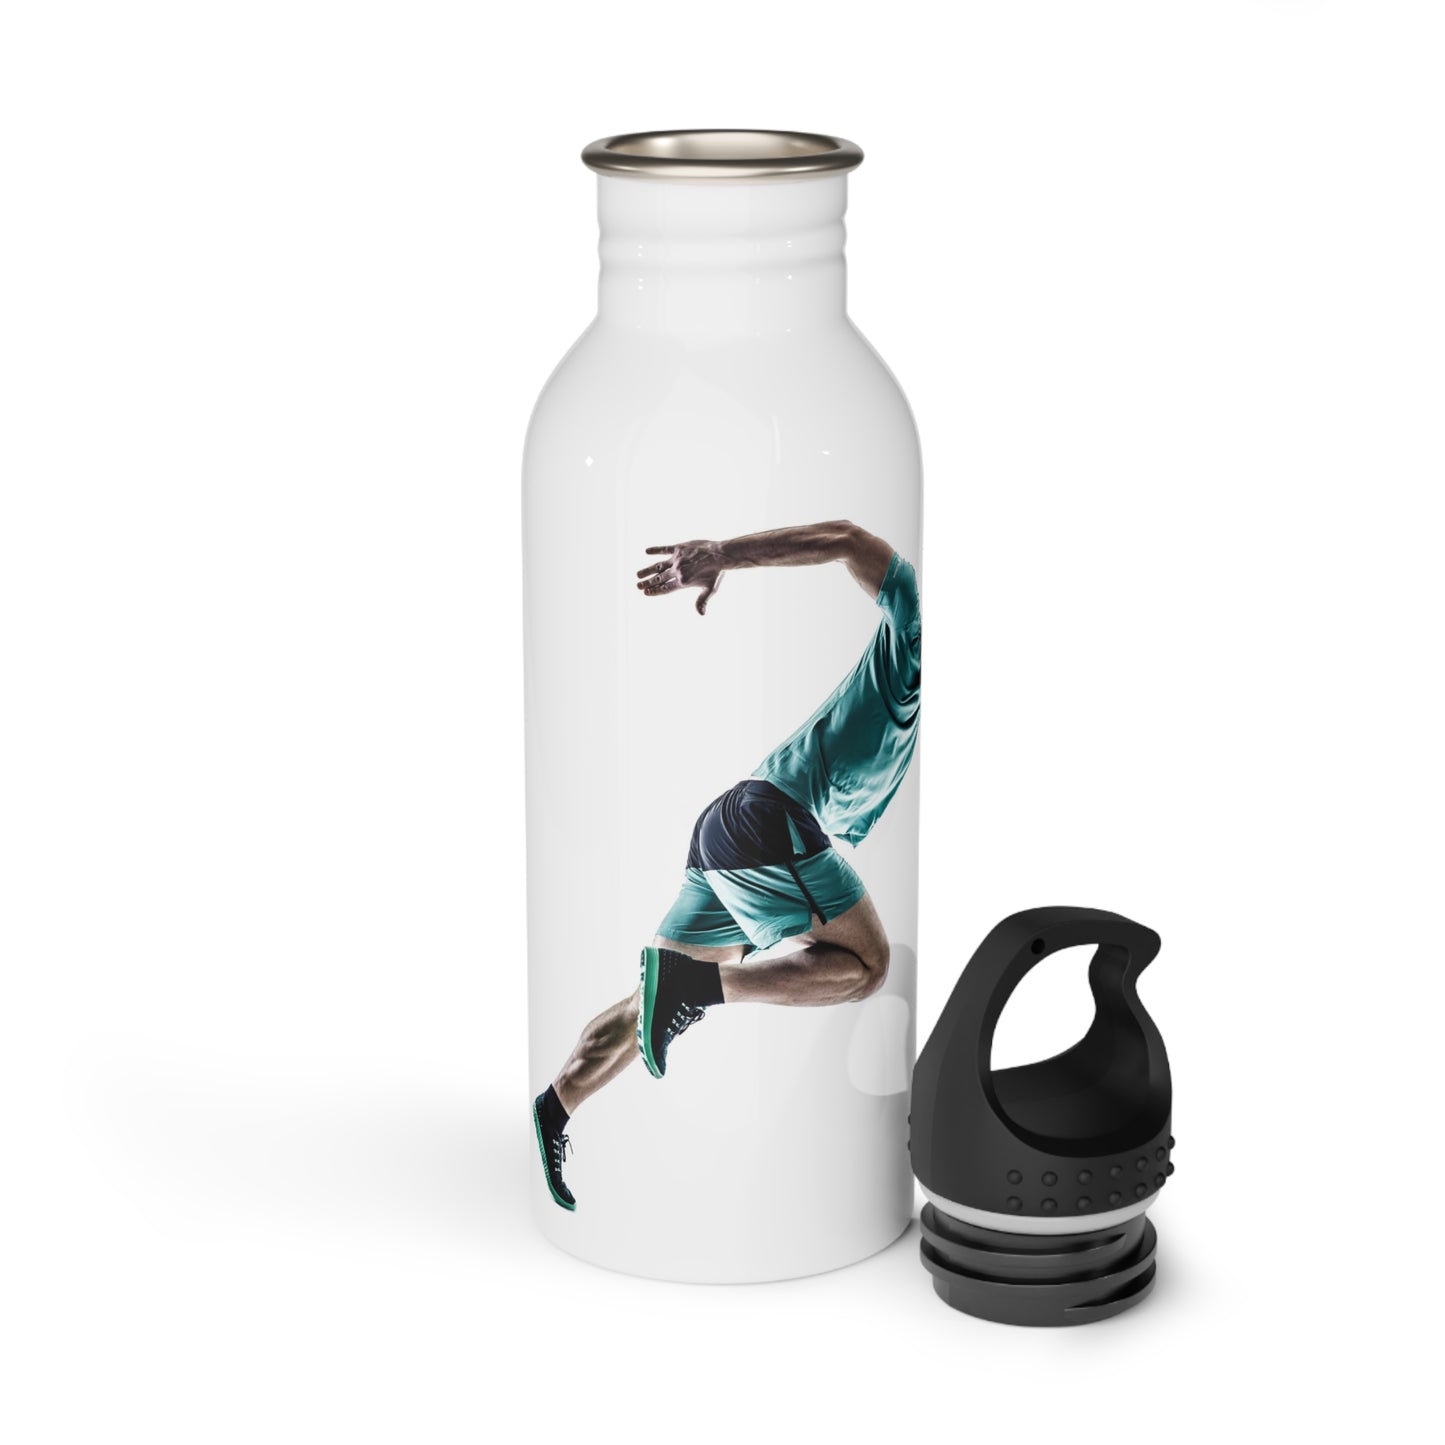 The Runner's Stainless Steel Water Bottle